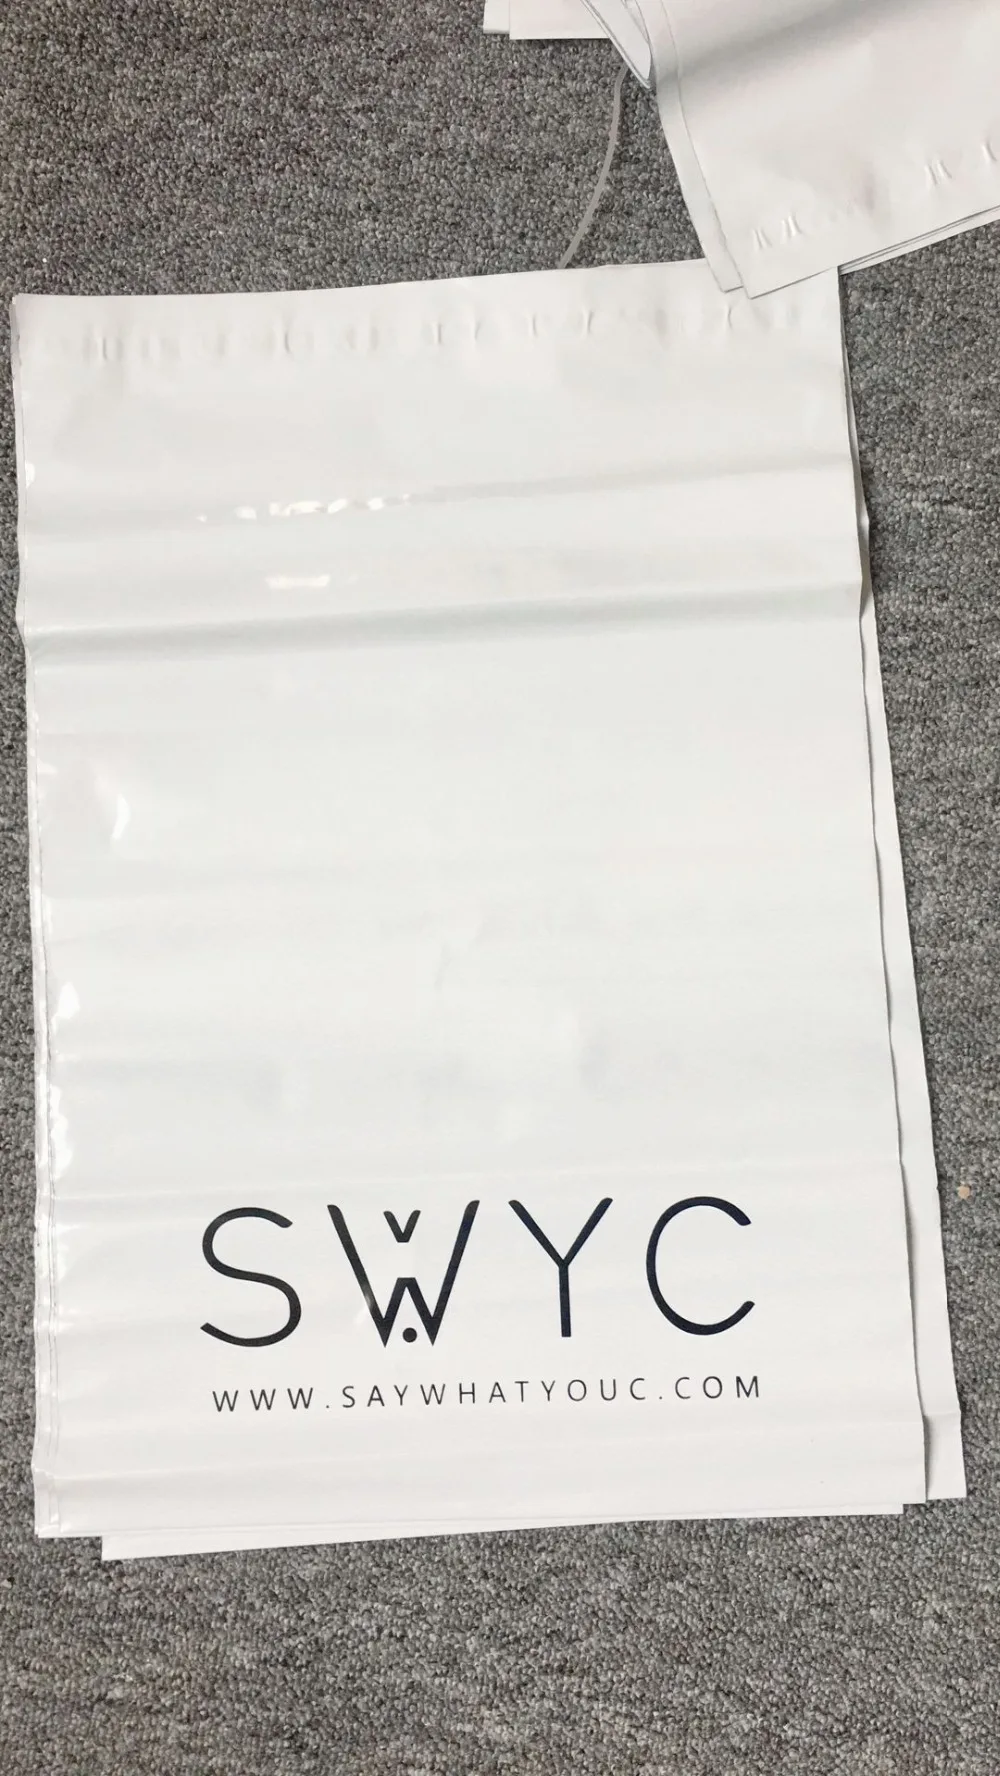 Бесплатный Пользовательский логотип, 500 шт./лот белый поли конверт для отправки почтовые полиэтиленовые пакеты, упаковочные конверты почтовый пакет пластик